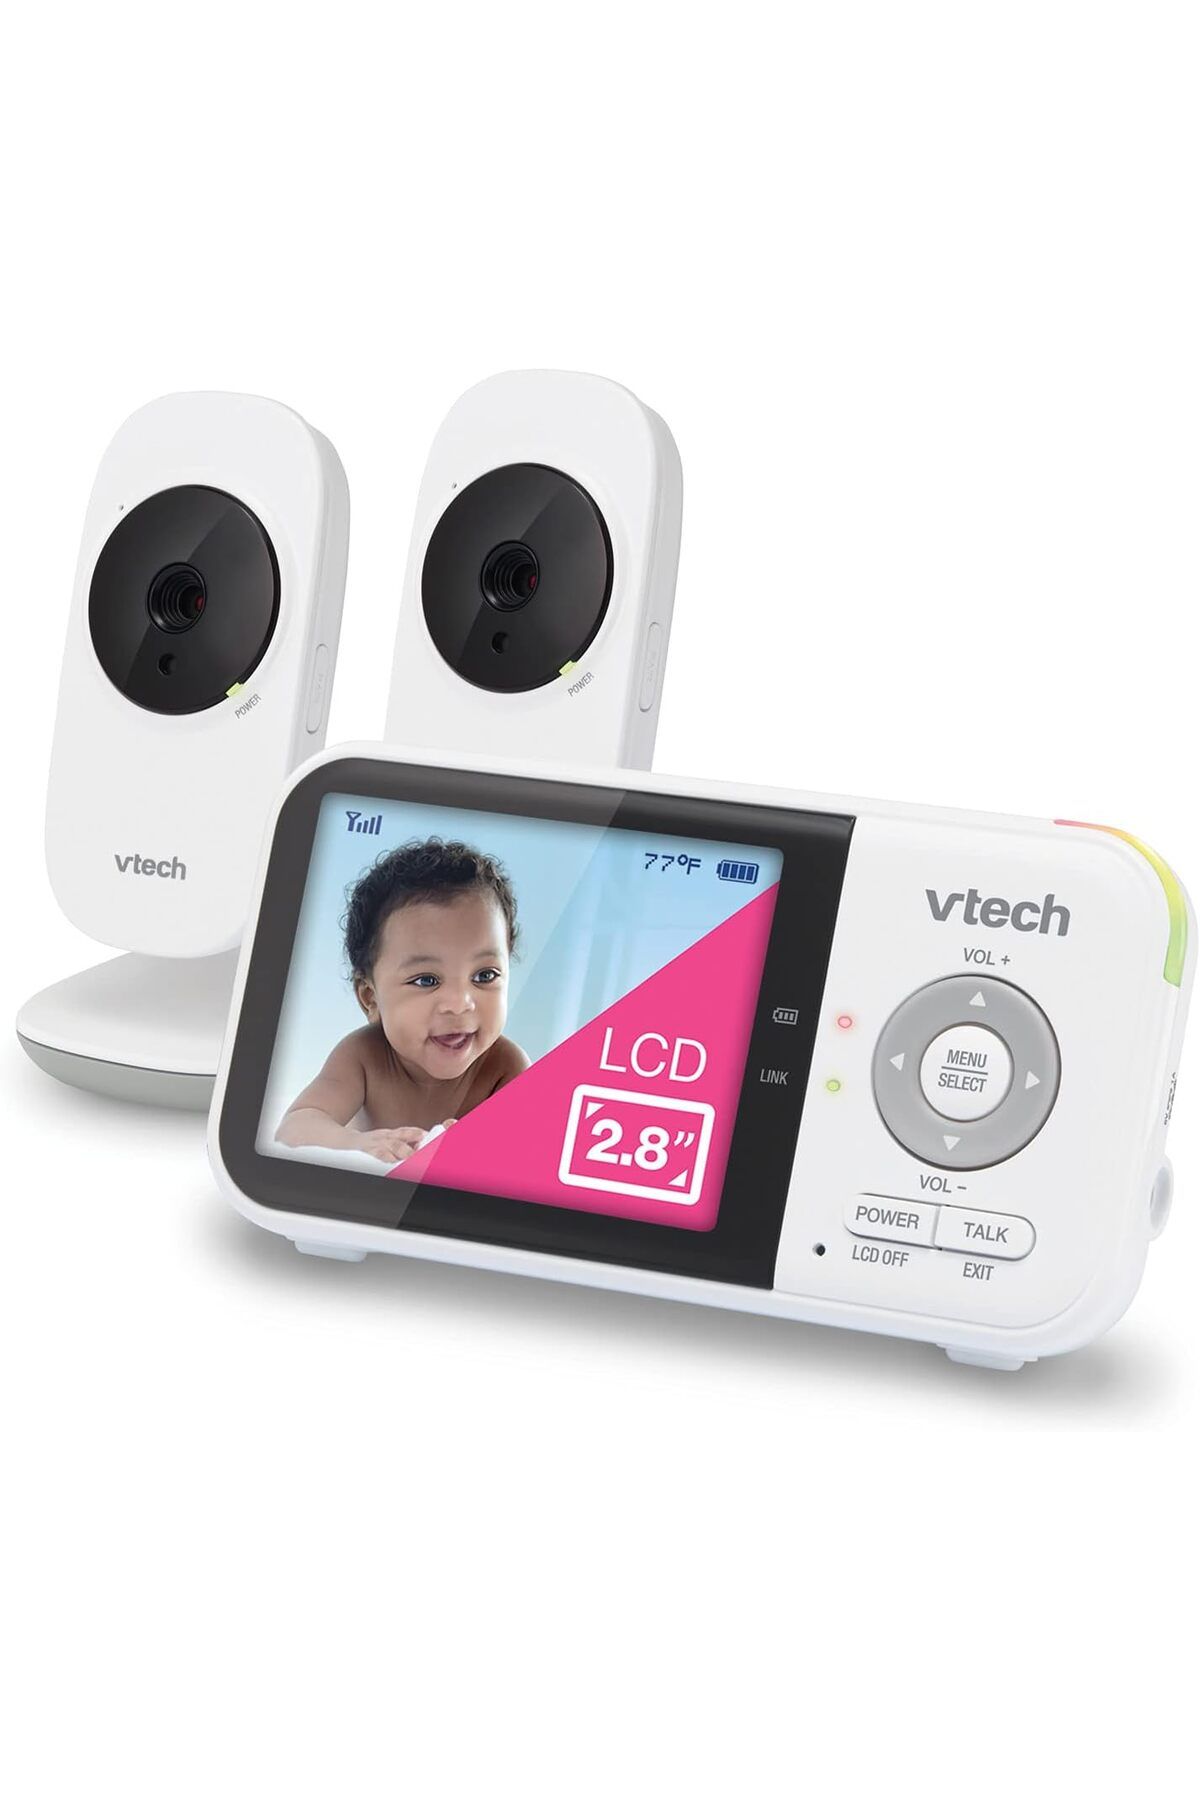 VTech Baby VTech VM819-2 Video Bebek Monitörü - 19 Saat Pil Ömrü - 2 Kamera